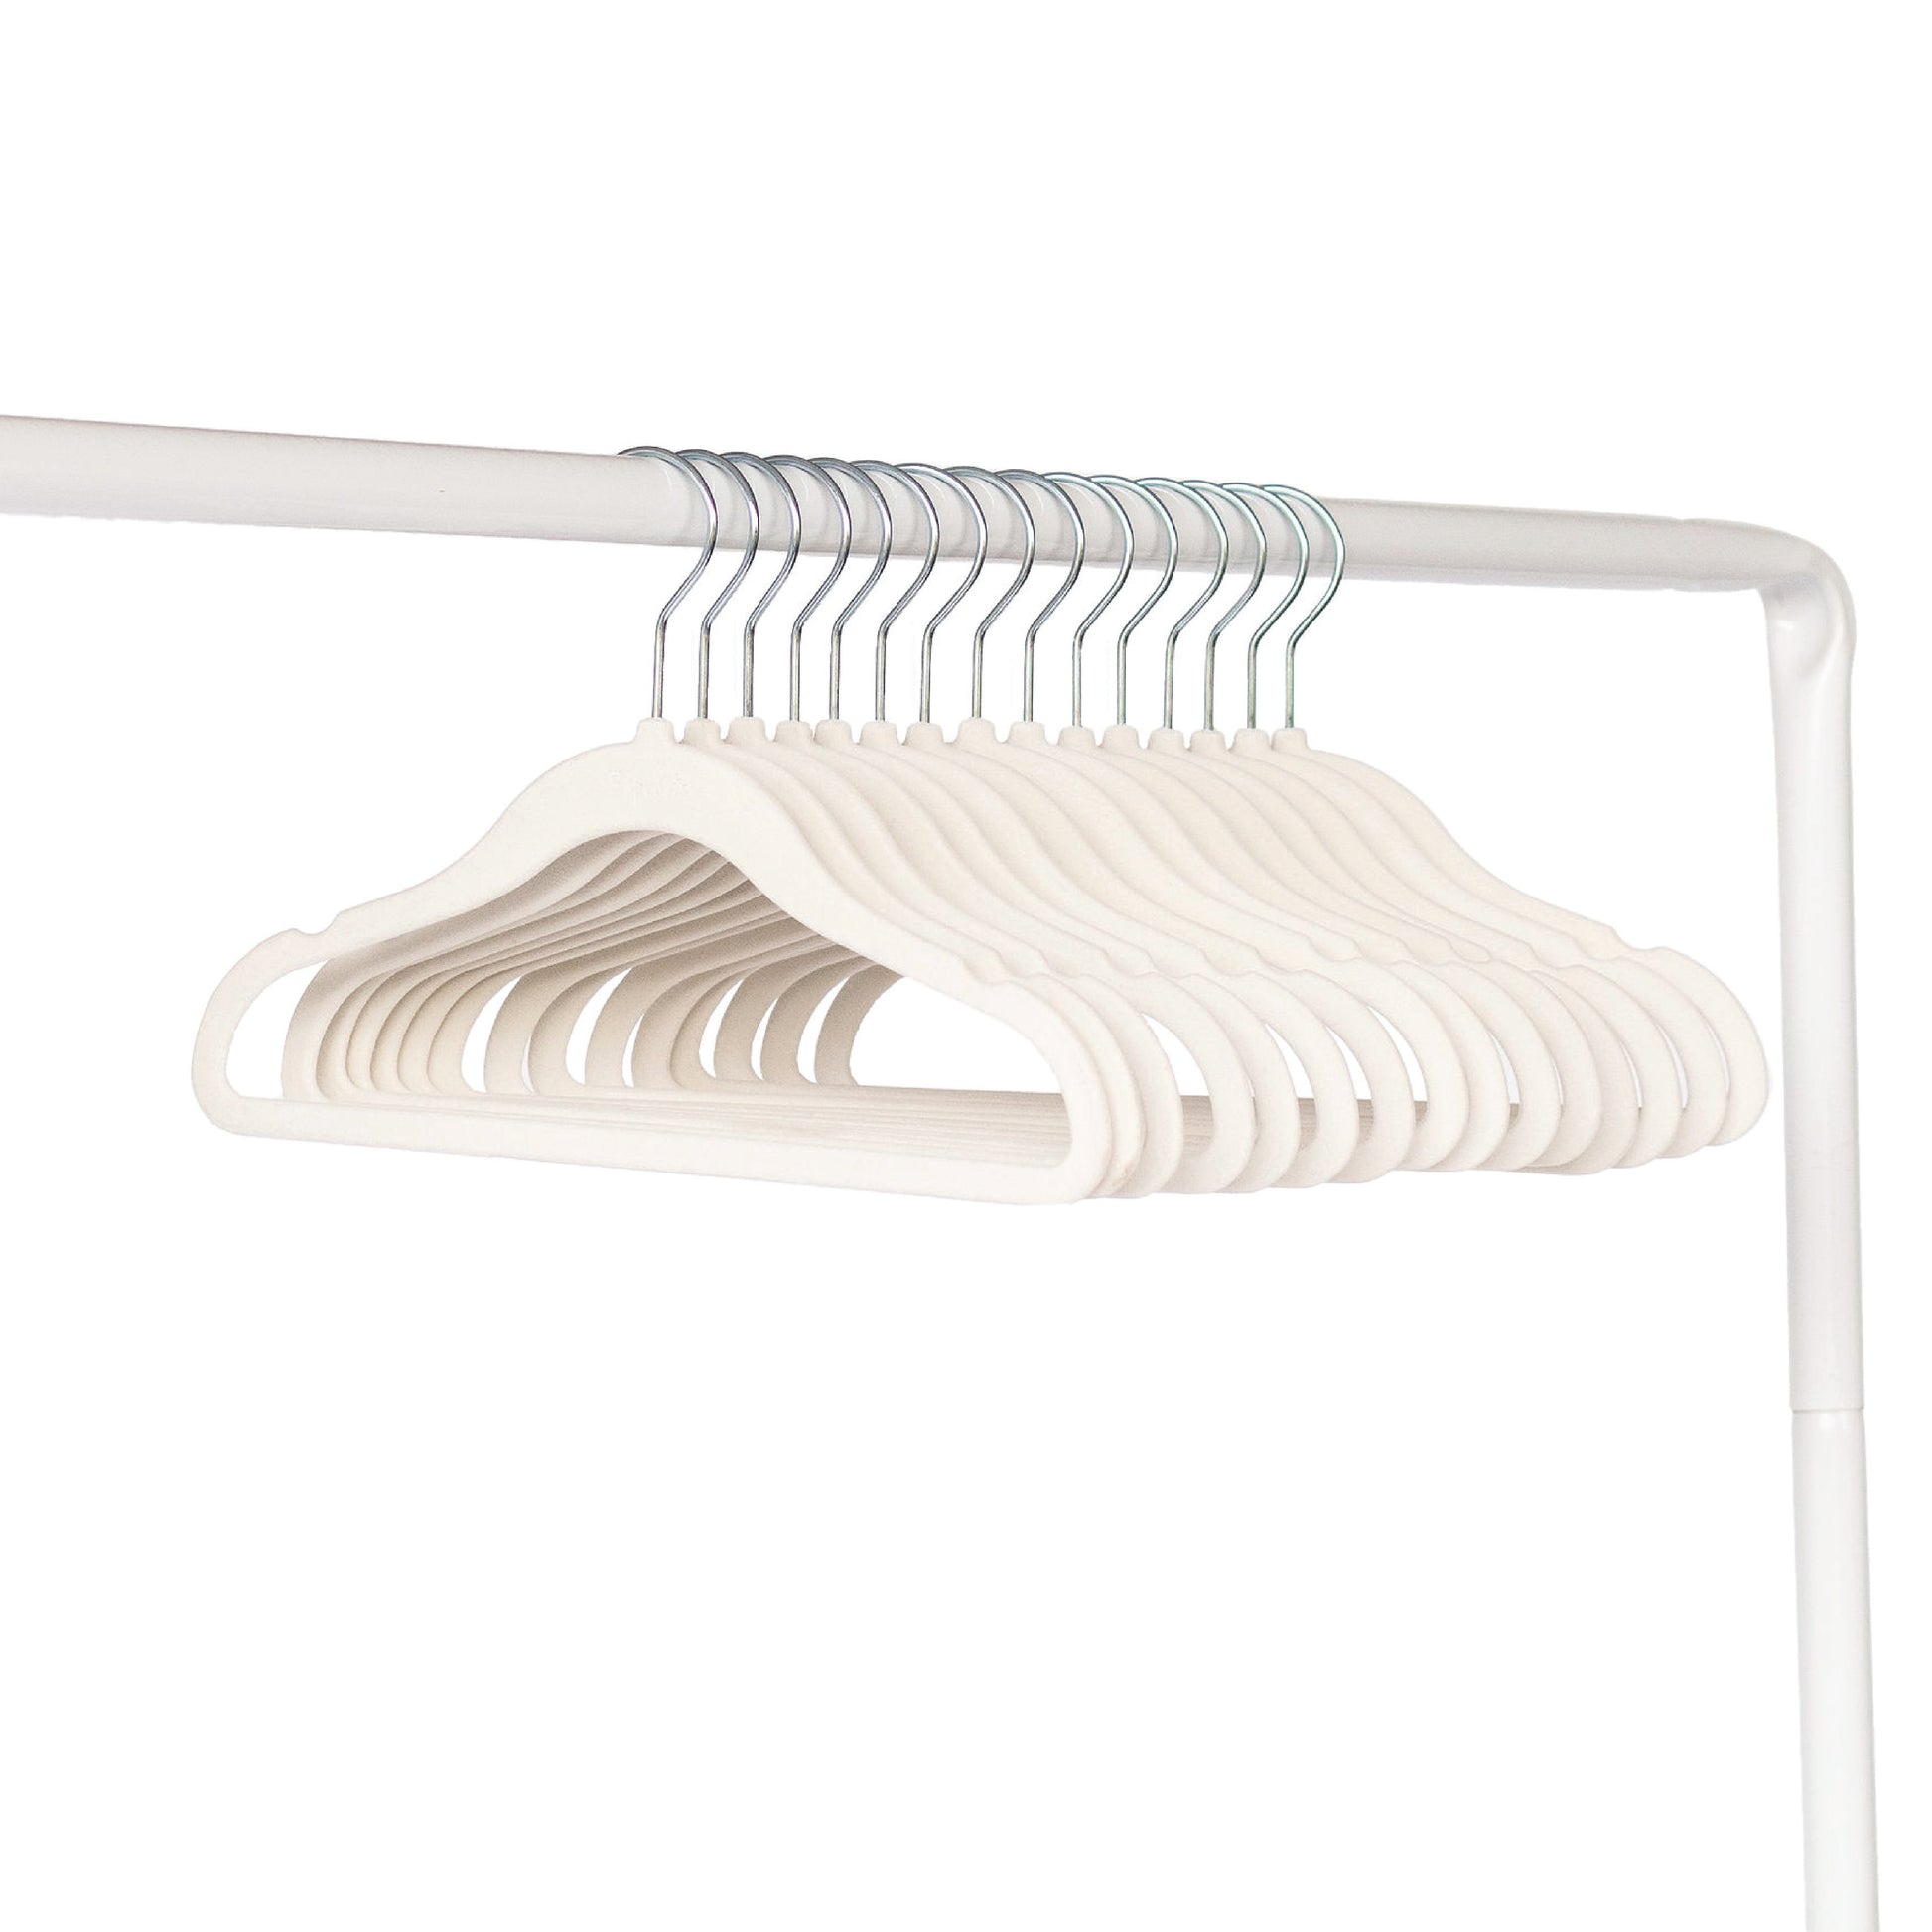 1 Set Of 10 Velvet Hangers, Non-slip Coat Hangers For Clothes